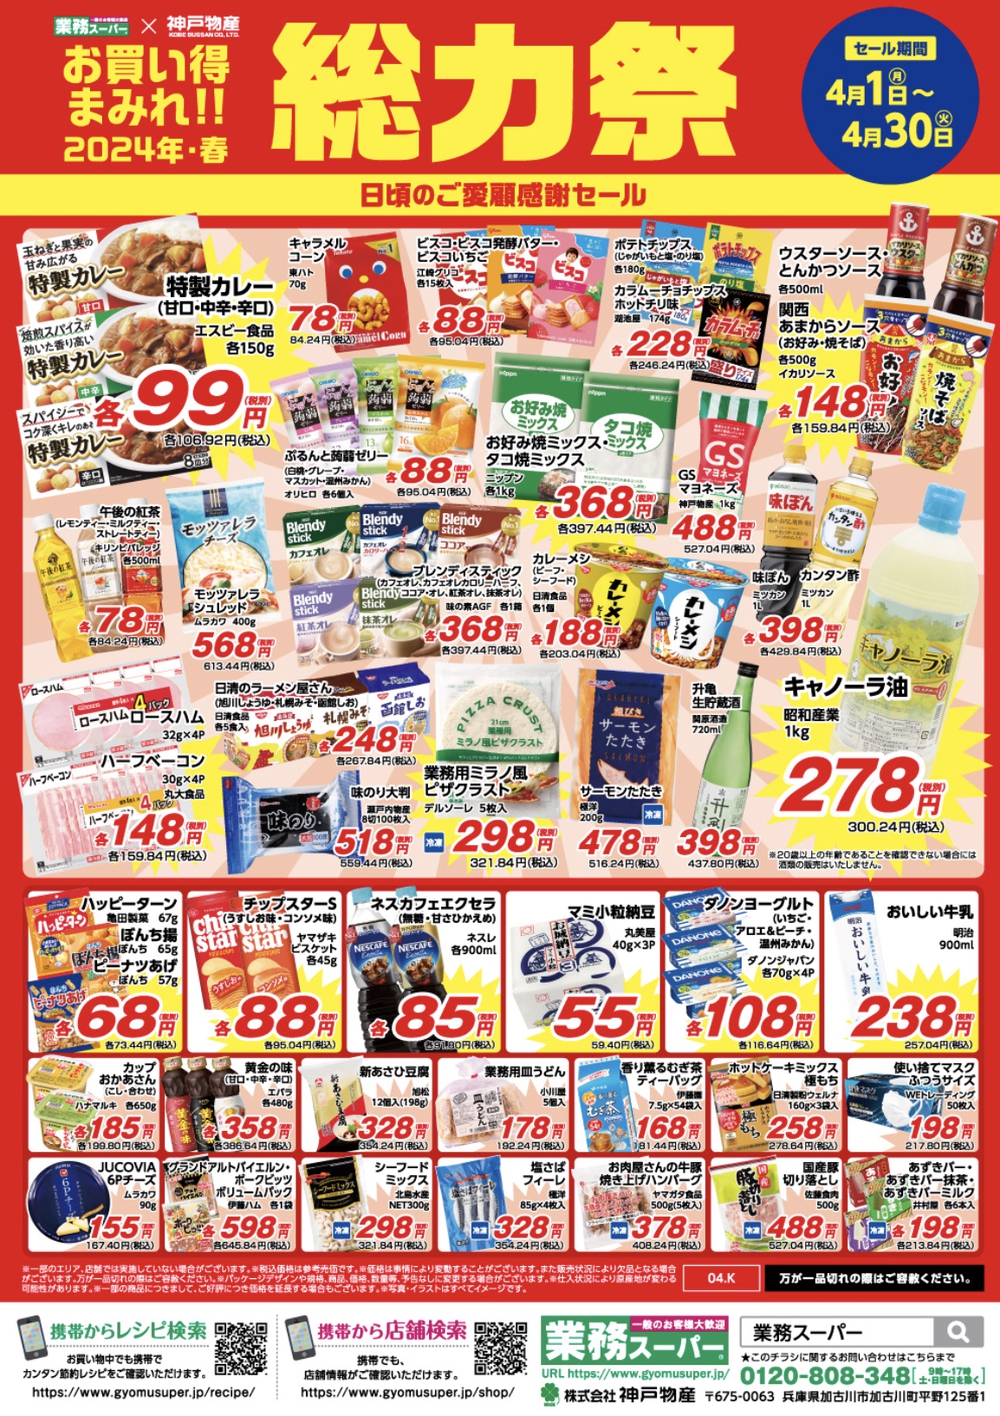 業務スーパー「総力祭」第2弾 福岡県の店舗 チラシ情報